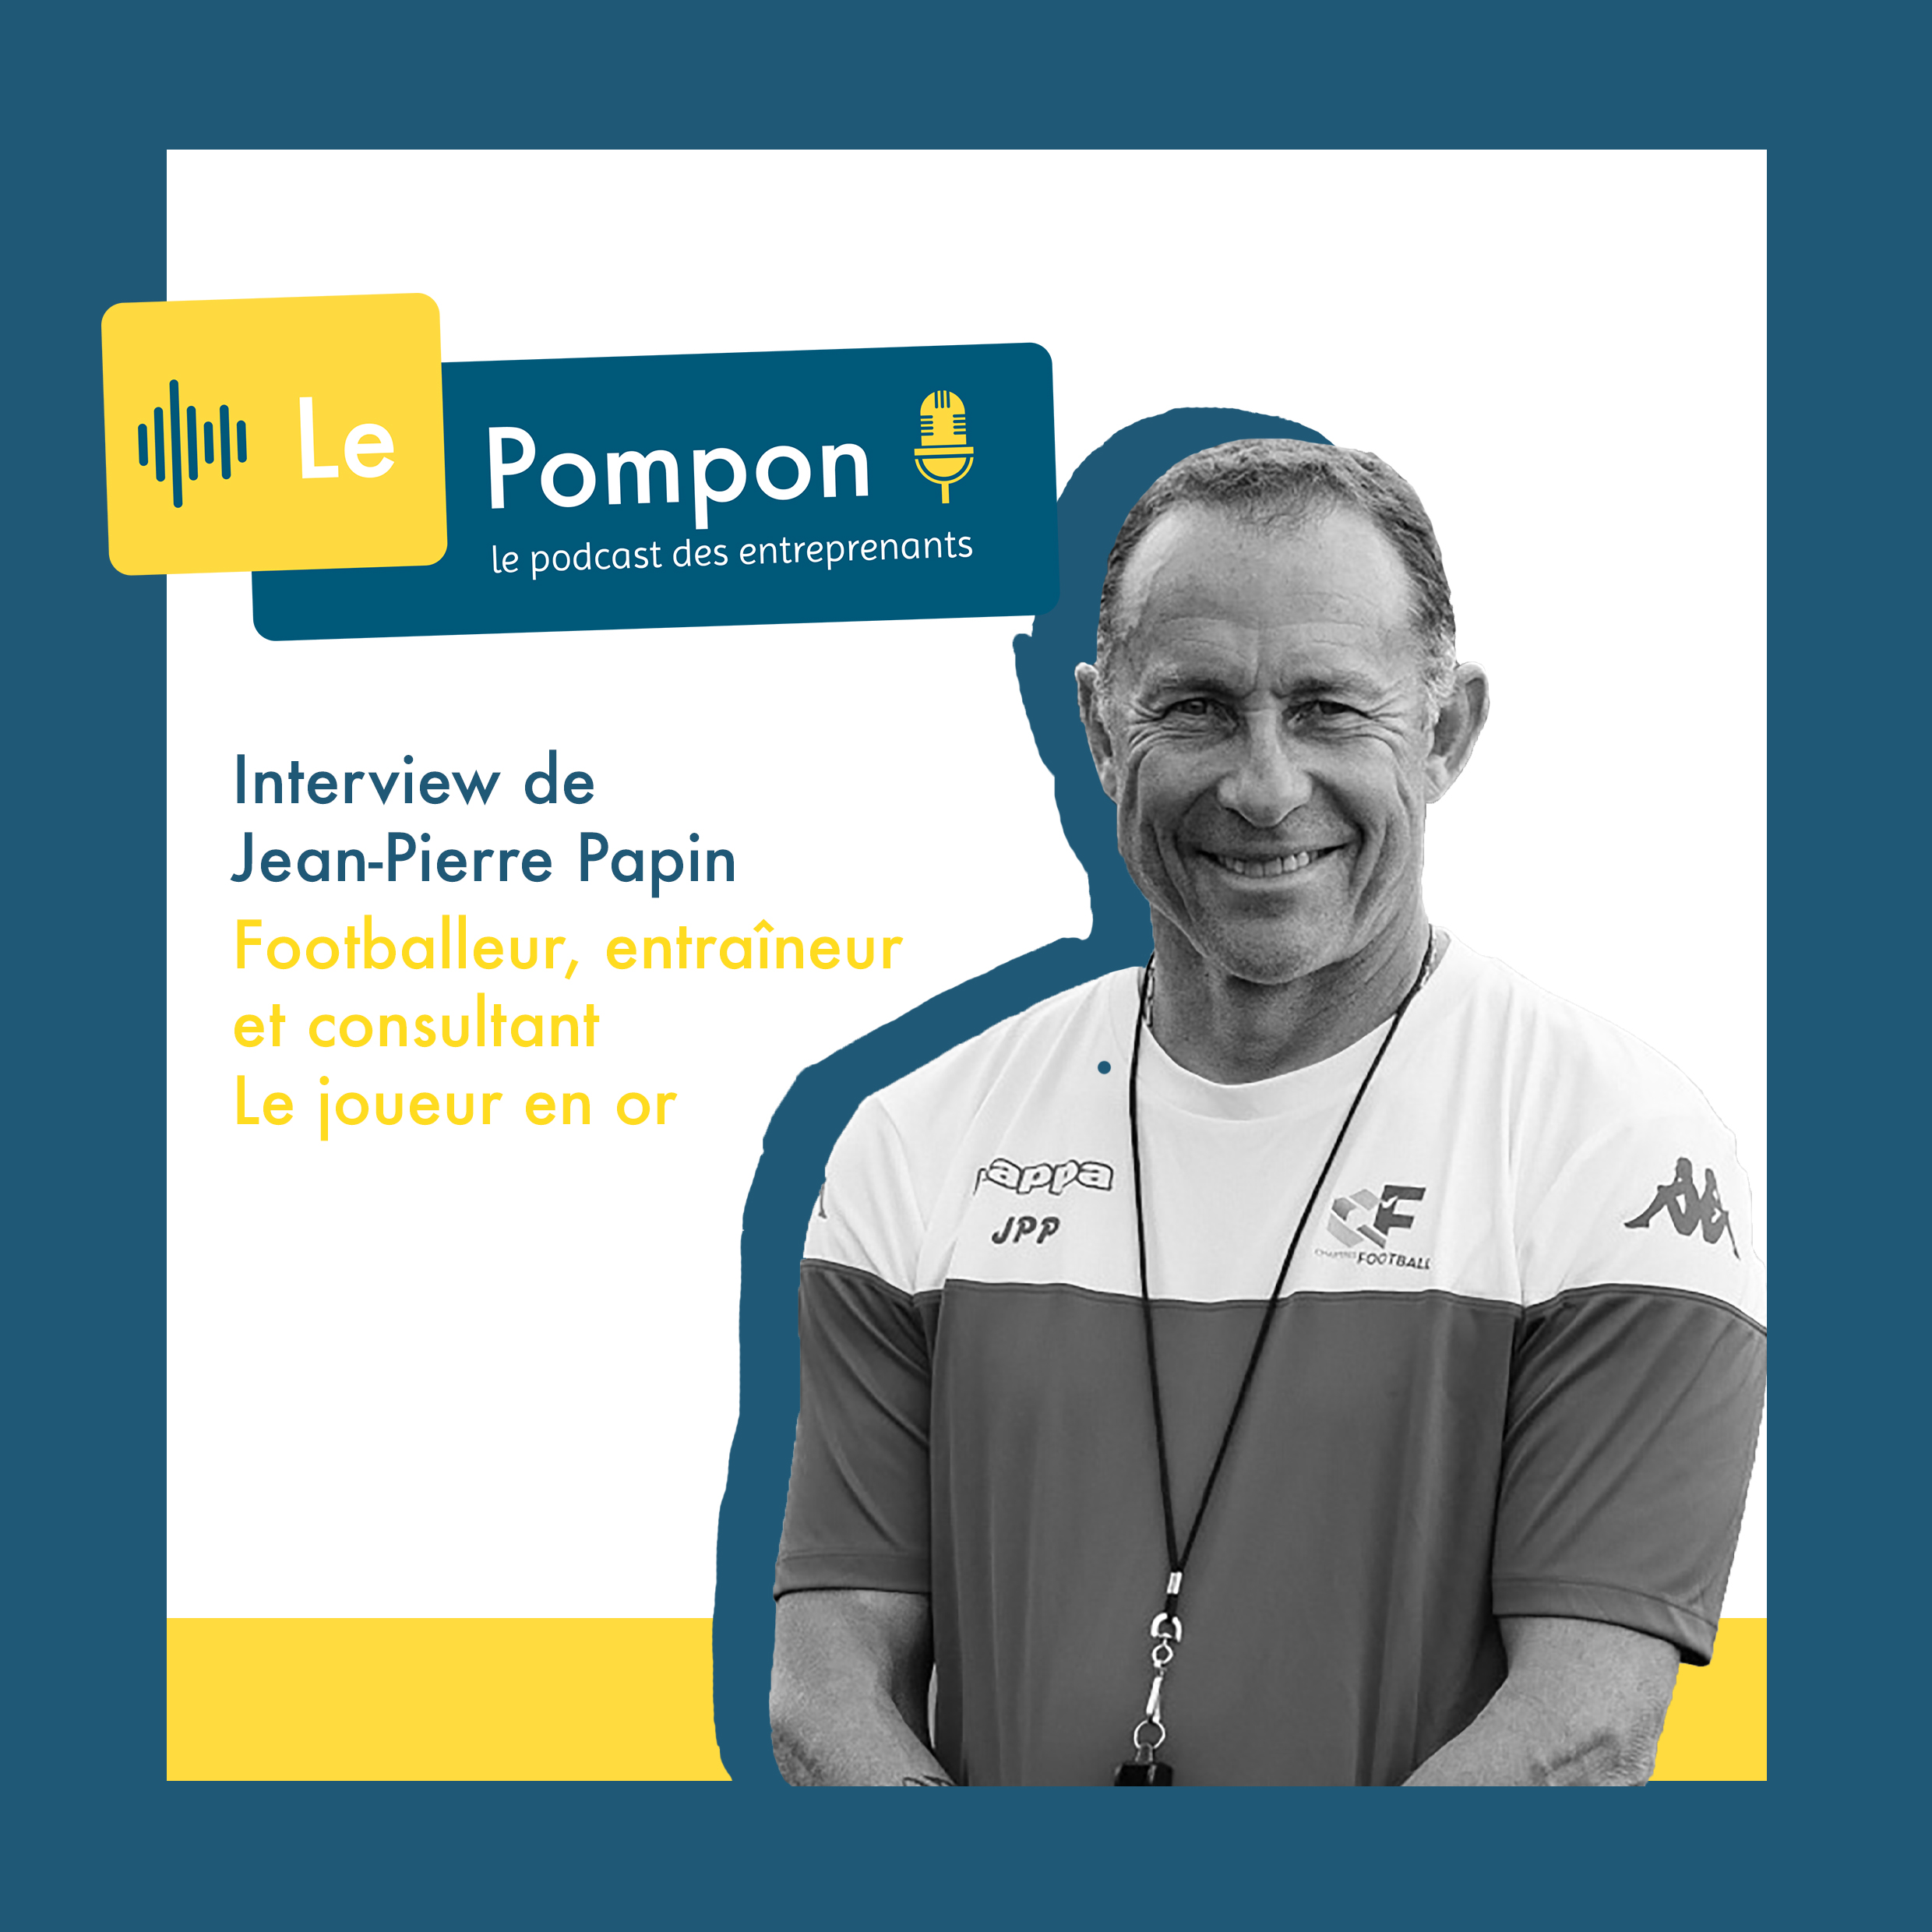 Illustration de l'épisode 54 du Podcast Le Pompon : Jean-Pierre Papin, Footballeur